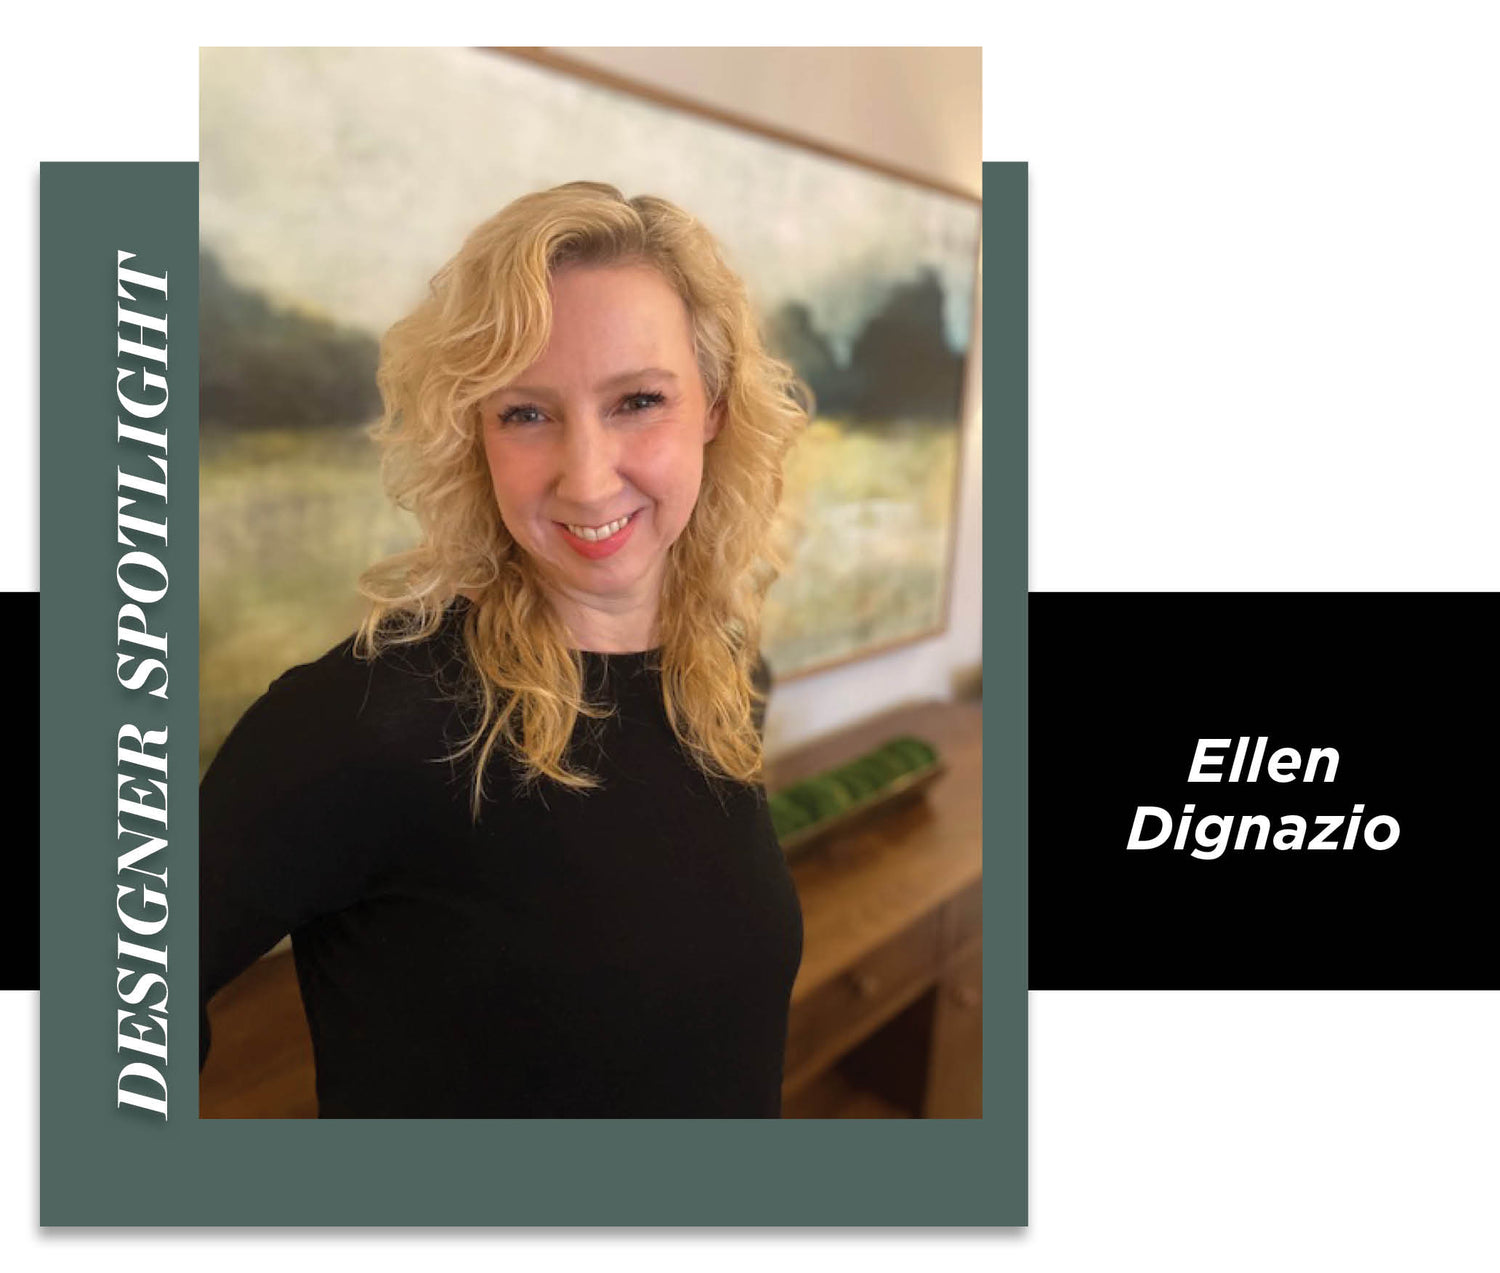 Meet Ellen Dignazio from our Enfield, CT, showroom!